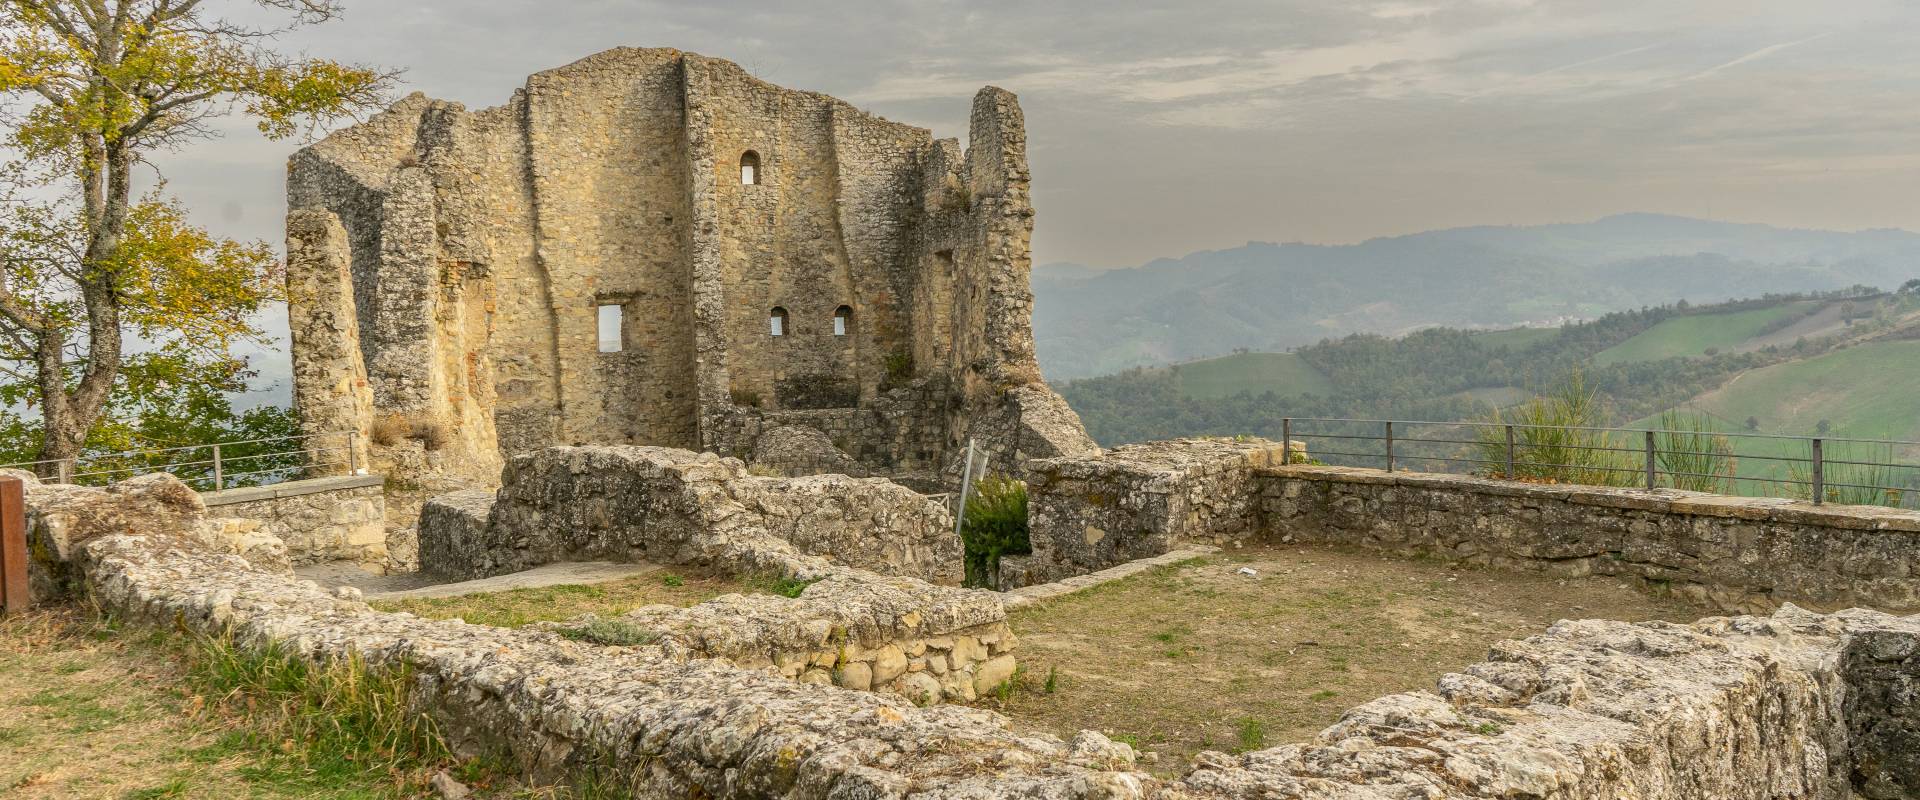 Castello di Canossa foto di Martina Santamaria @pimpmytripit